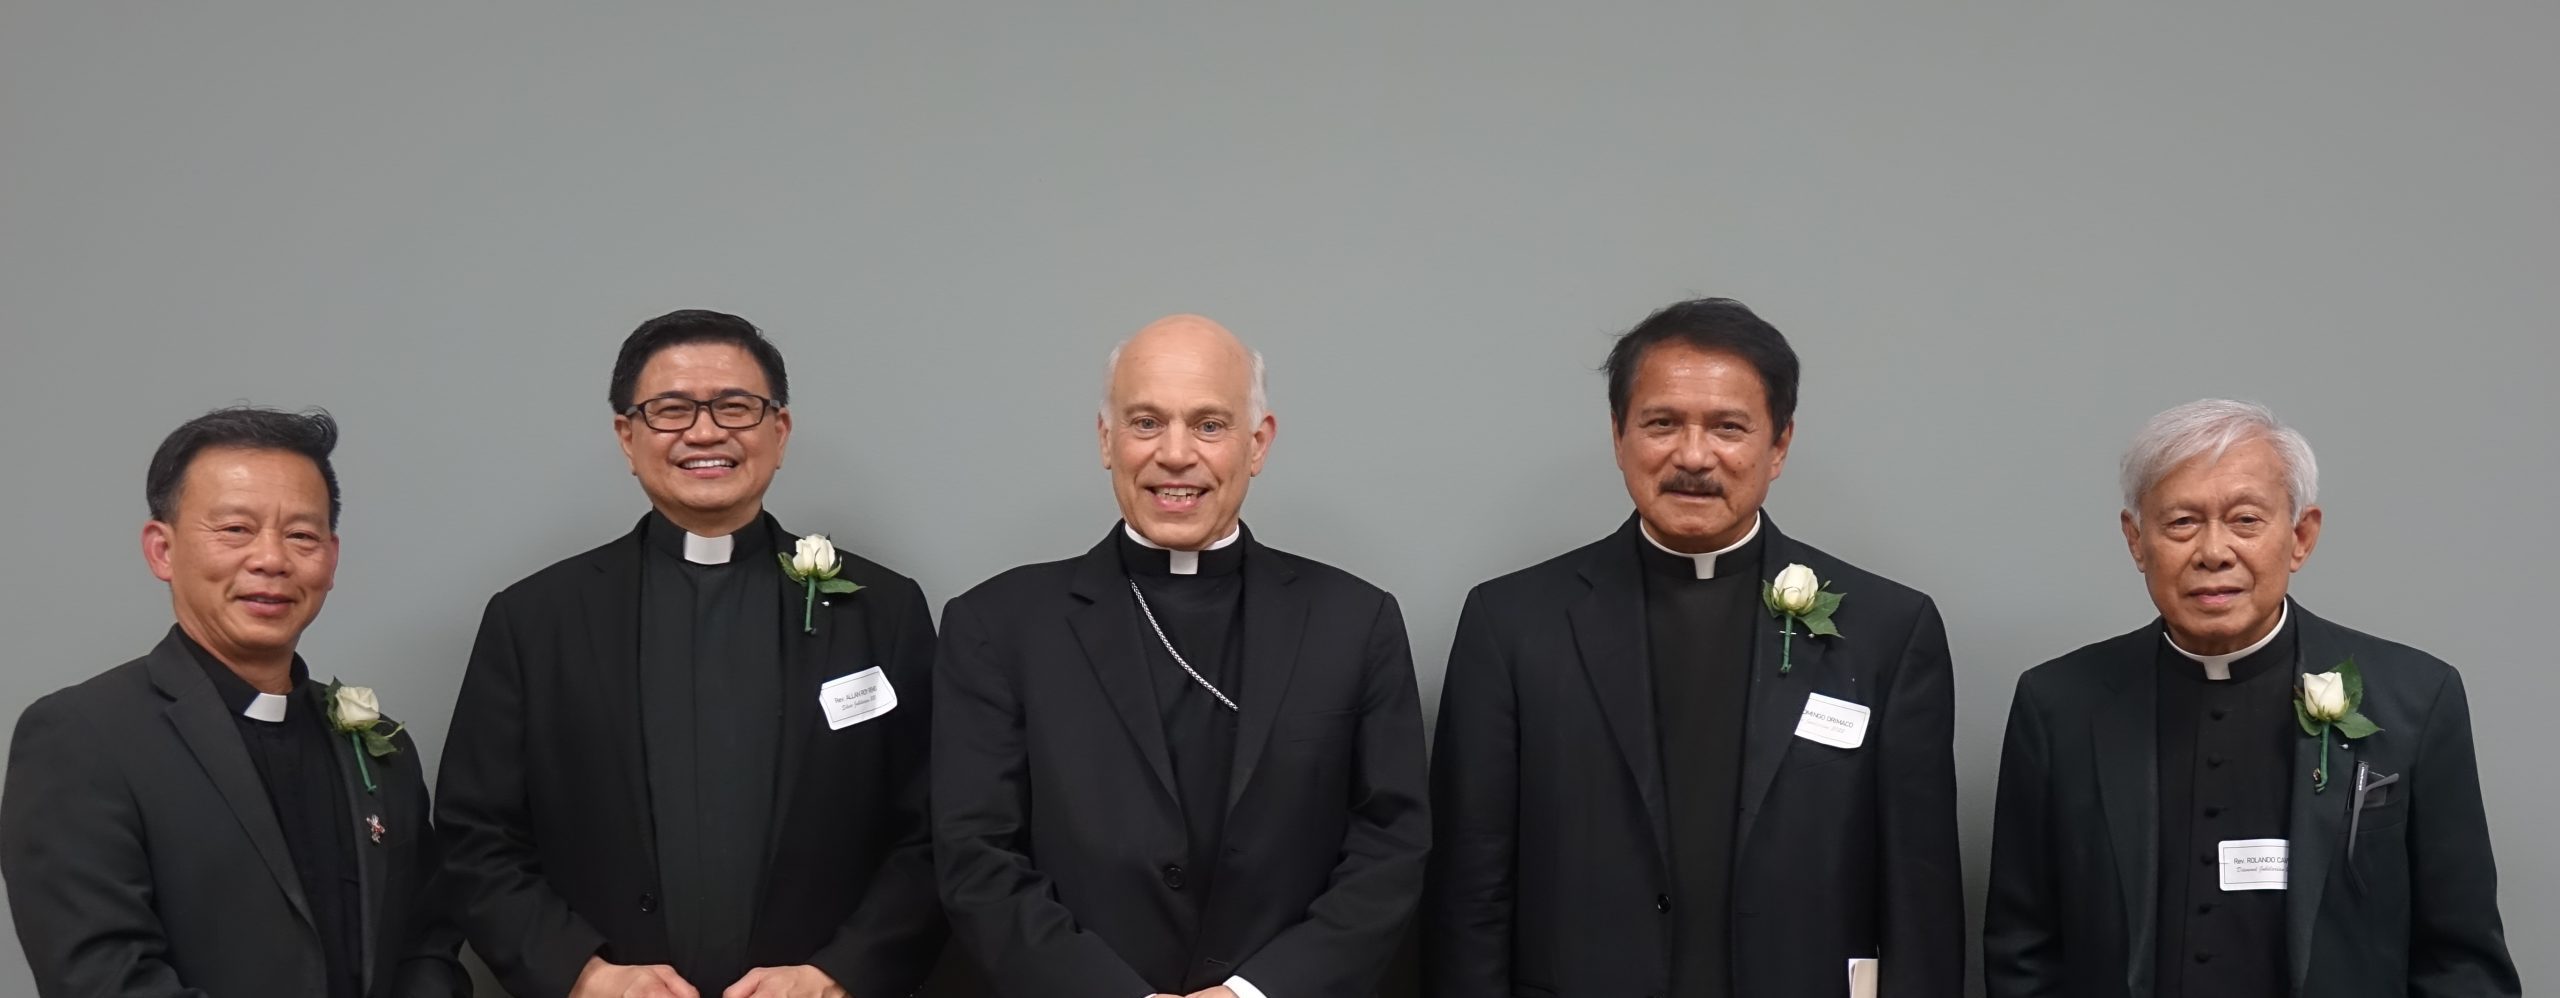 Jubilarian priests celebrate ordination anniversaries